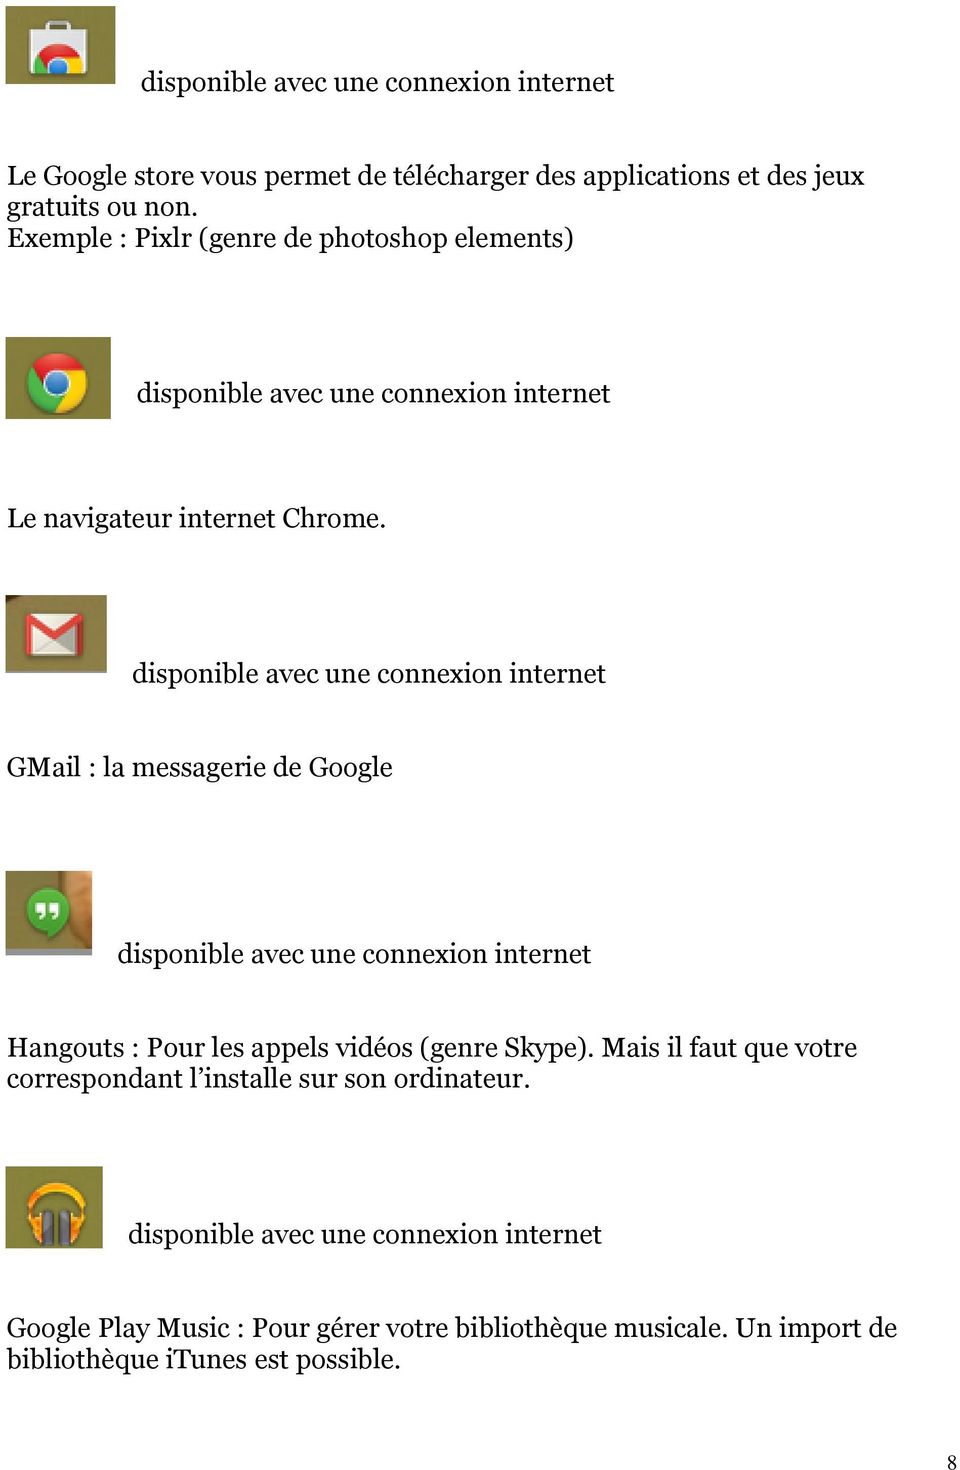 disponible avec une connexion internet GMail : la messagerie de Google disponible avec une connexion internet Hangouts : Pour les appels vidéos (genre